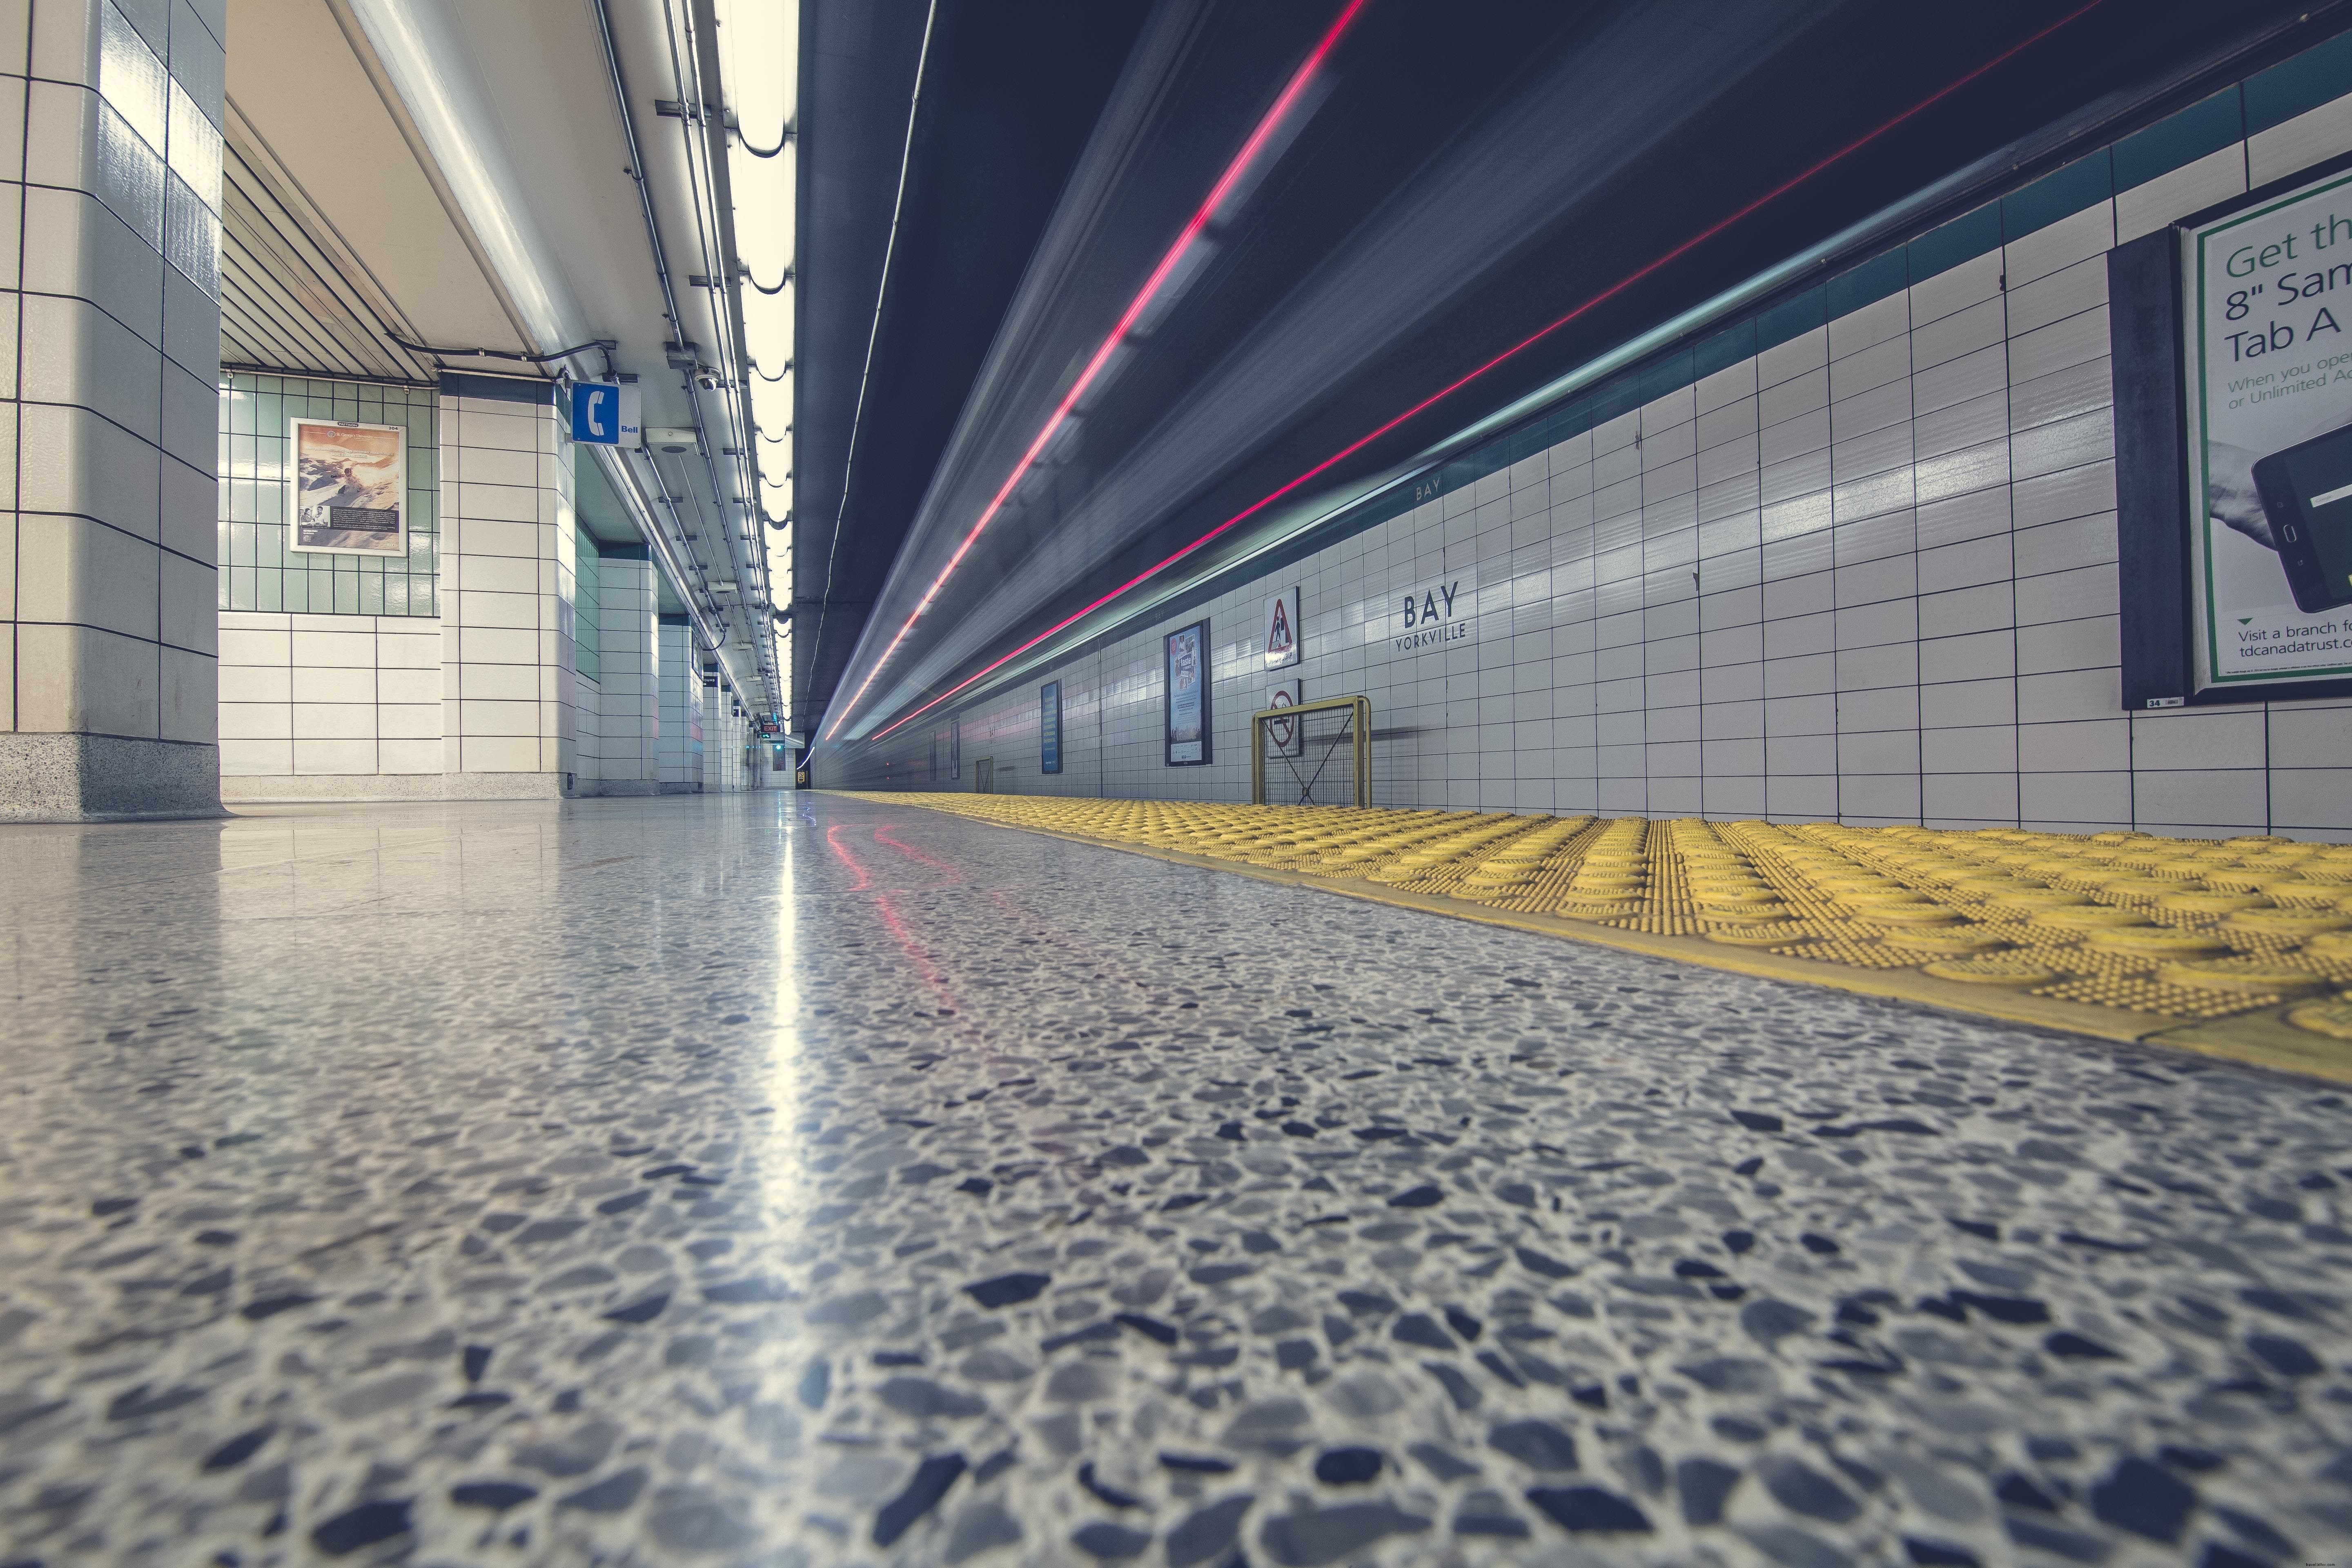 Foto de piso y túnel del metro